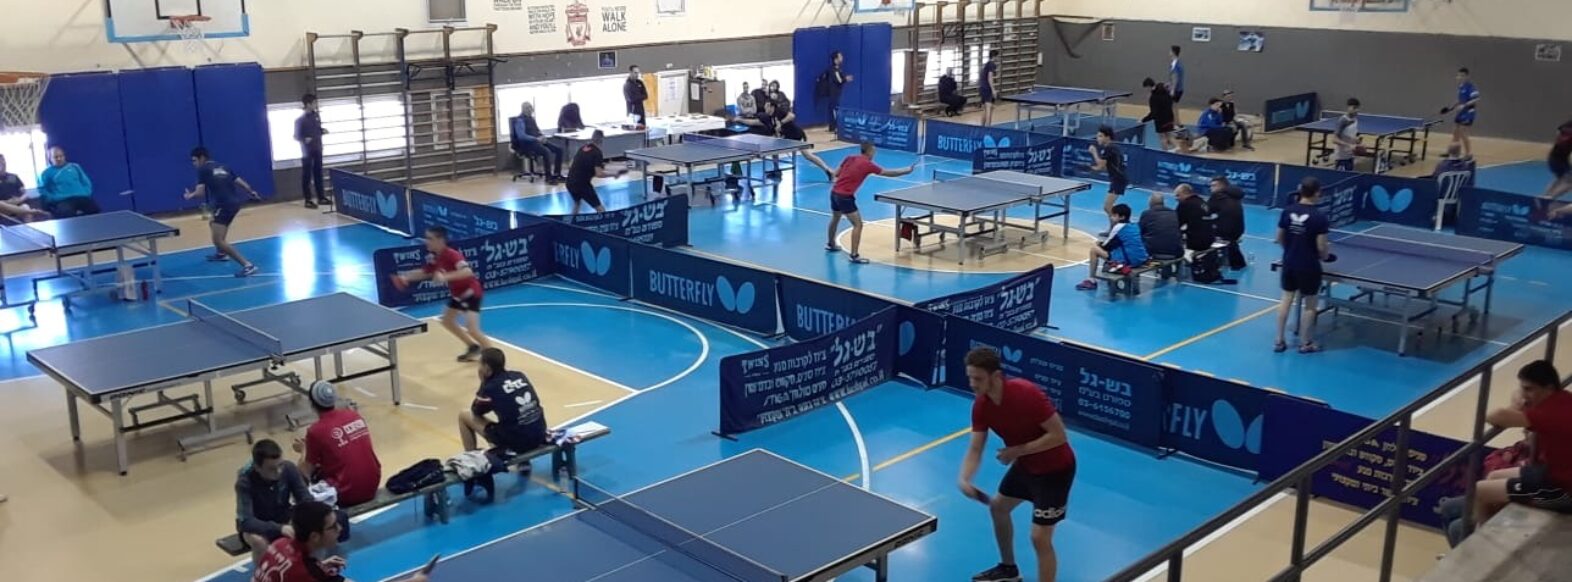 קריית חיים תארח לראשונה את אליפות ישראל בטניס-שולחן לשנת 2021